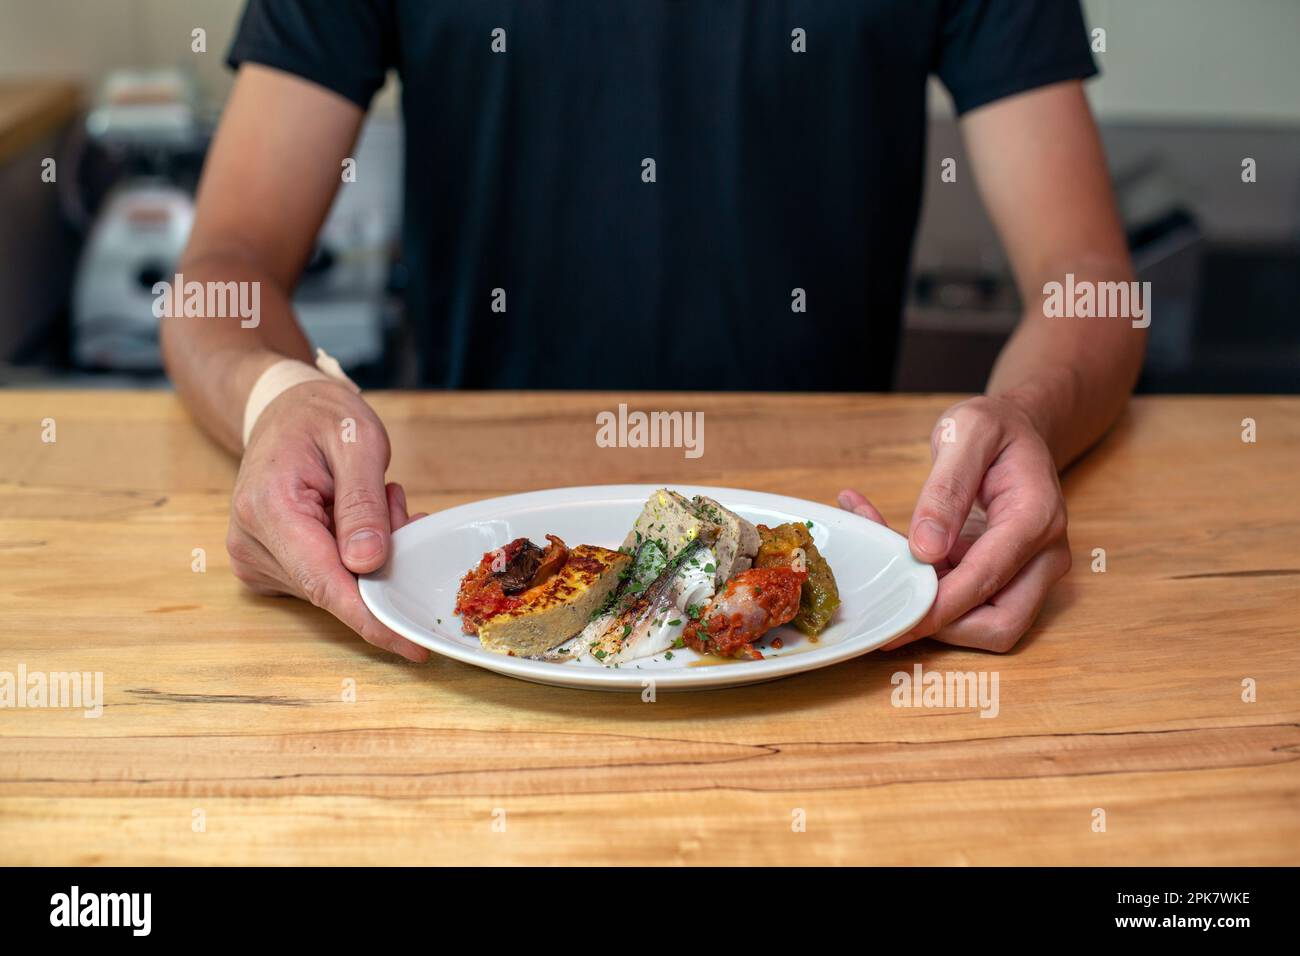 Un homme debout à un comptoir de restaurant présentant des assiettes de plats cuisinés, des plats de menu. Banque D'Images